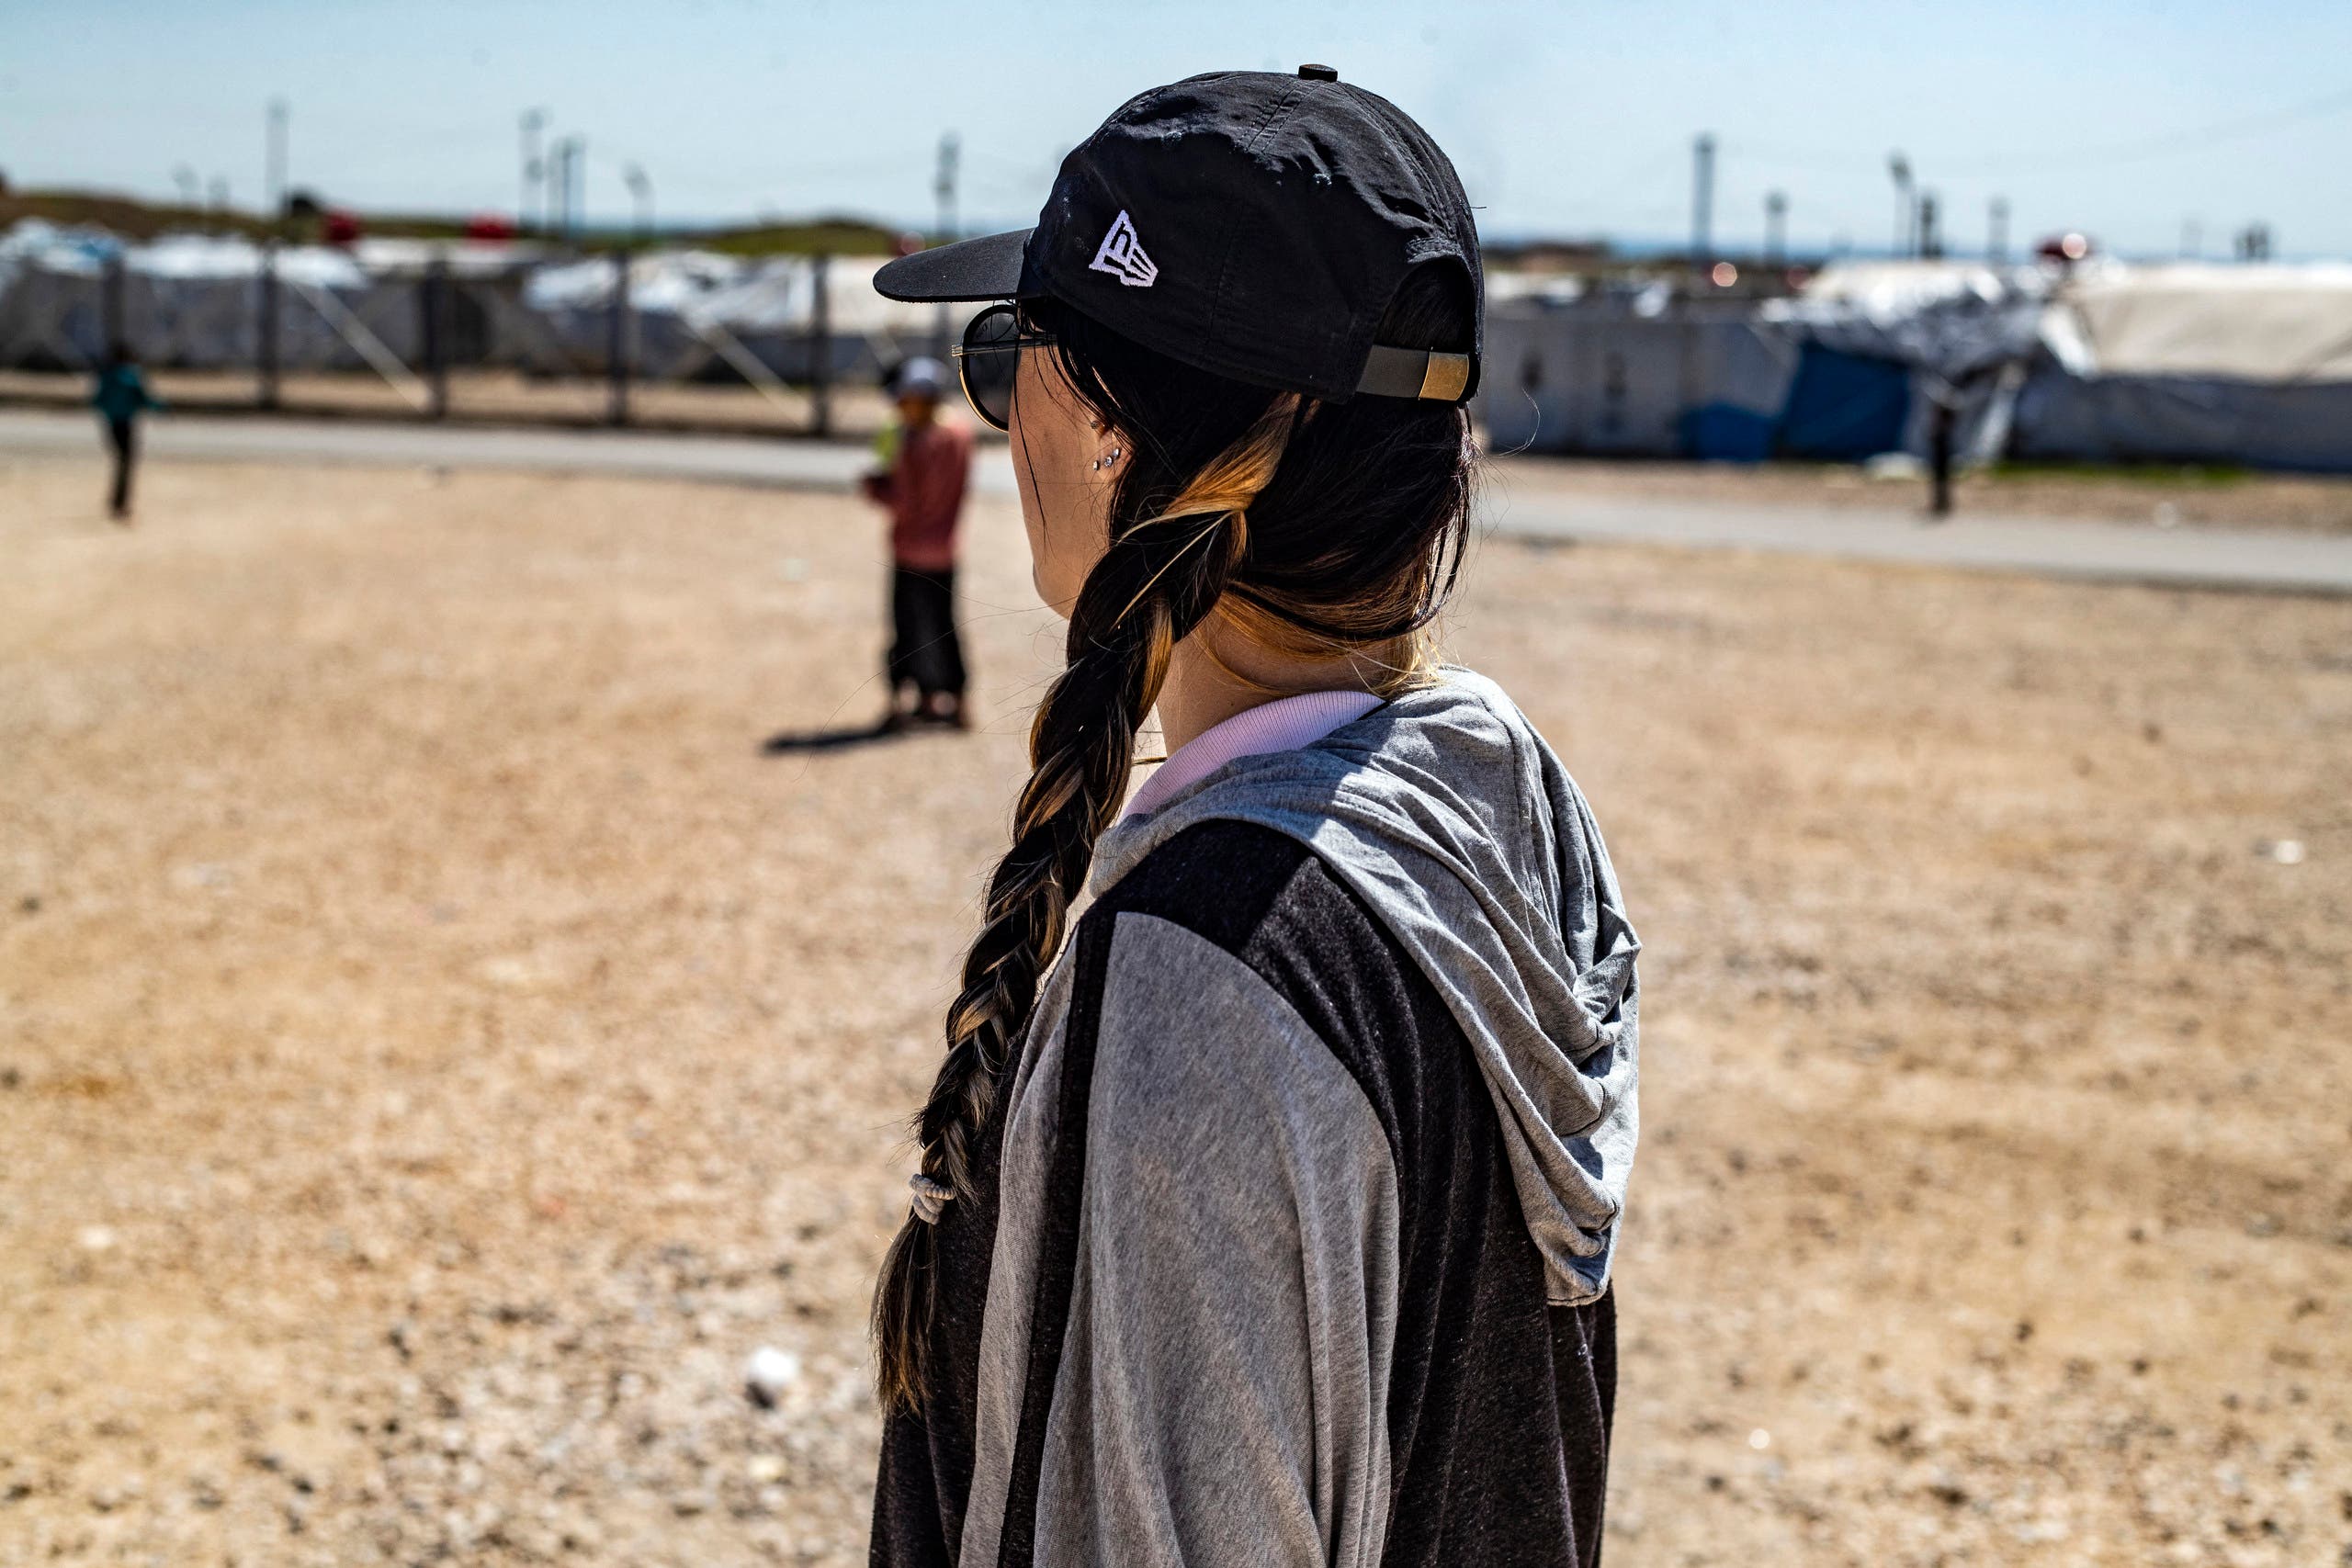  الفرنسية إيميلي كونيغ في مخيم روج شمال شرق سوريا (فرانس برس)